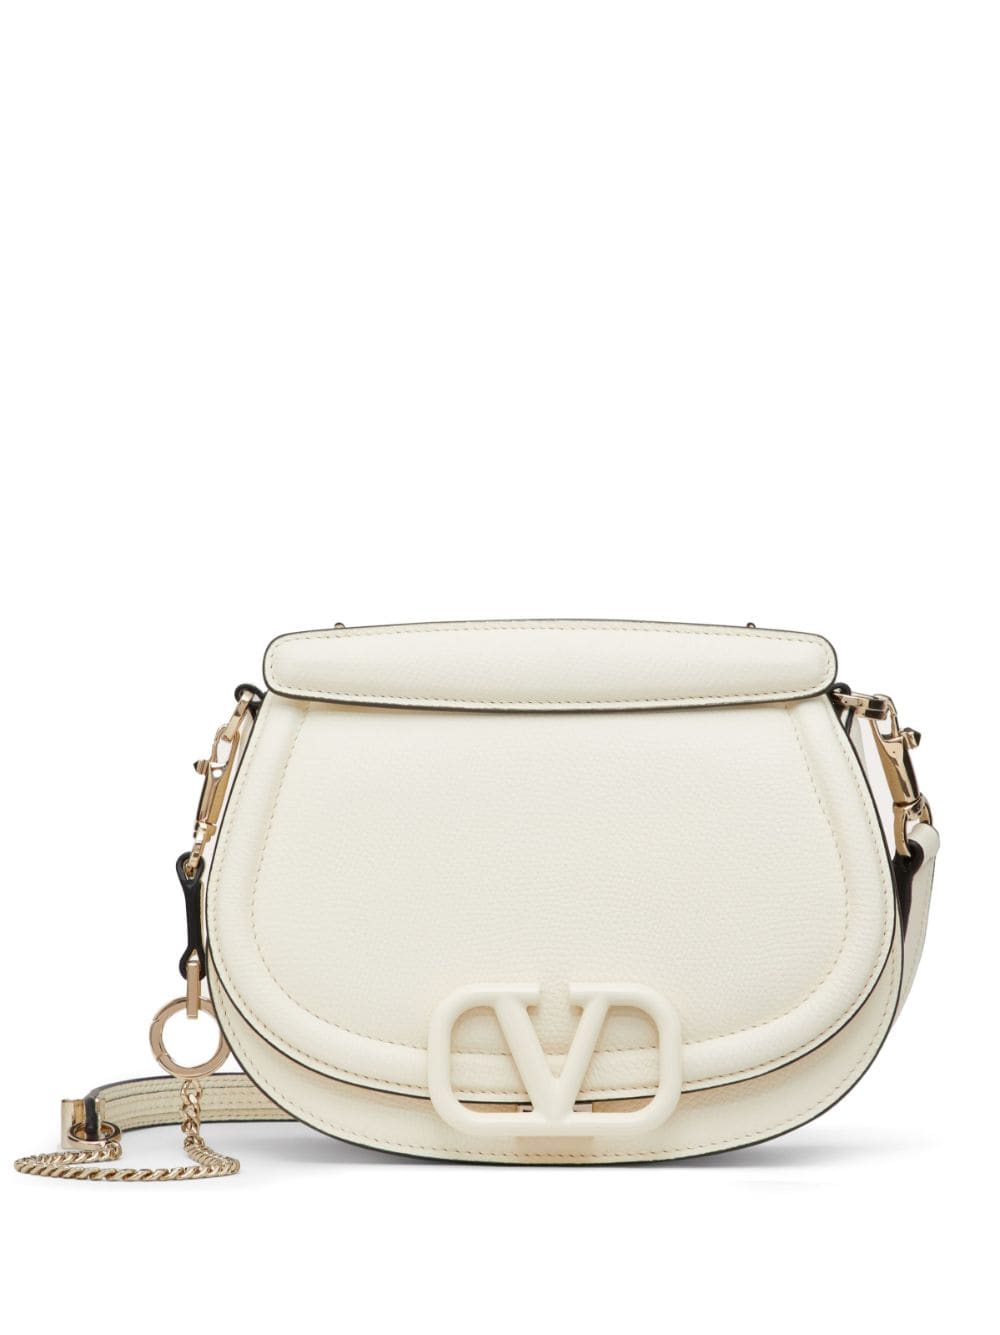 Valentino Garavani VSling leather shoulder bag - White von Valentino Garavani